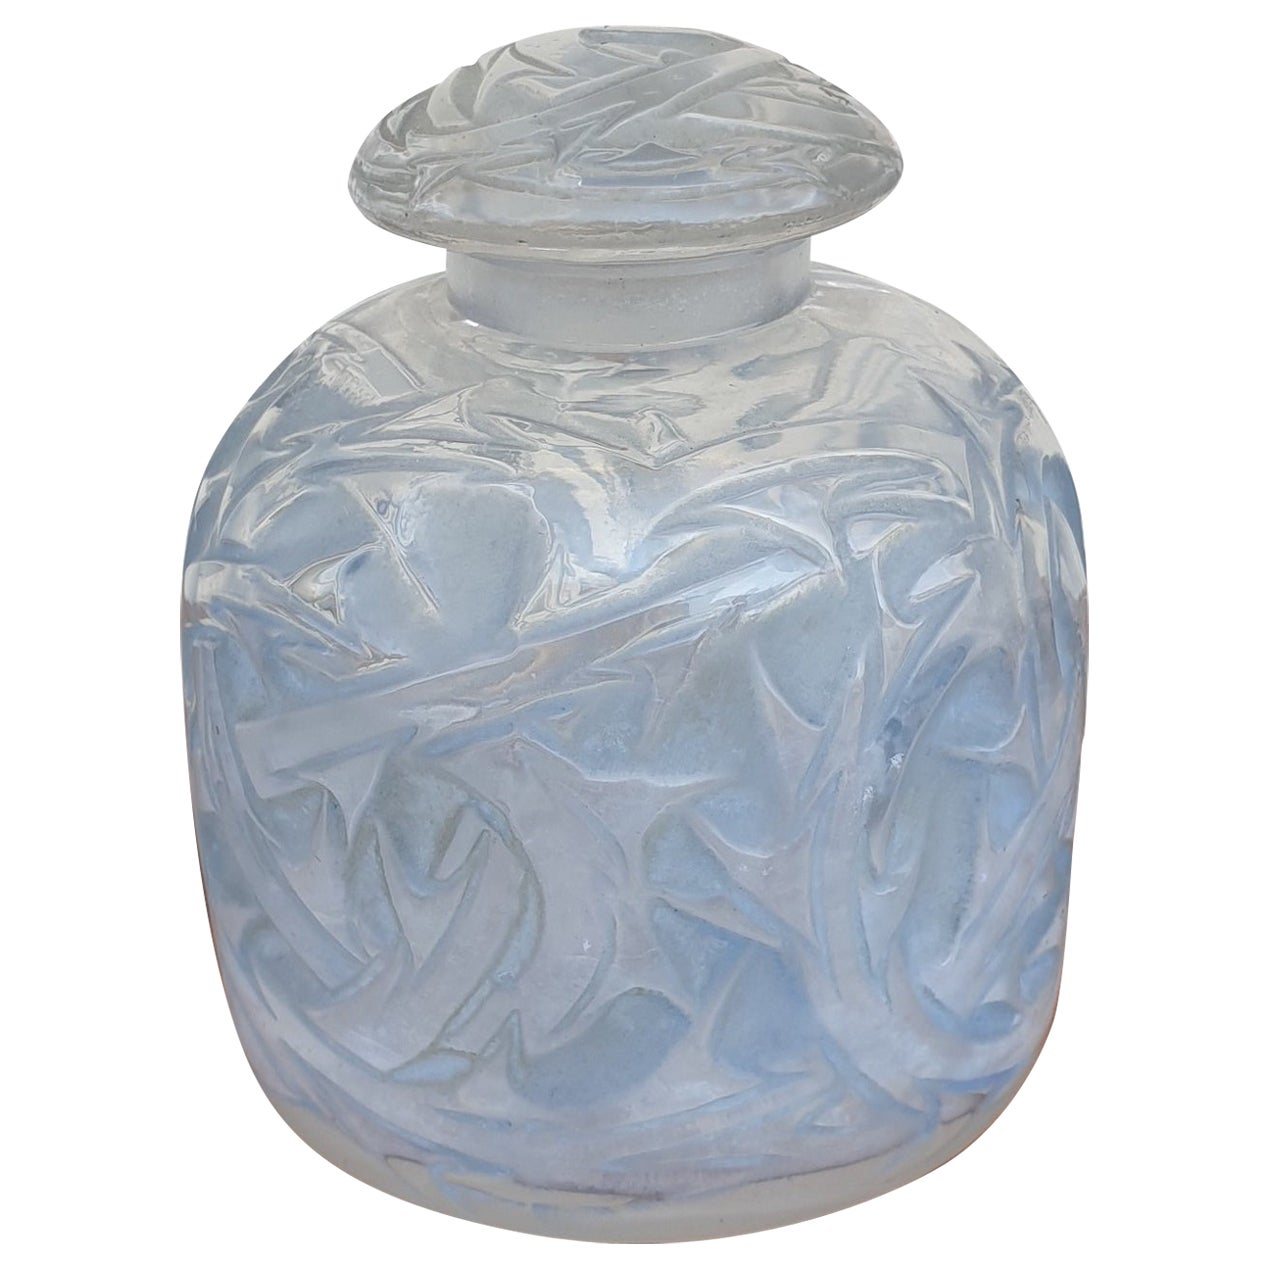 R Lalique, "Epine" Bottle N°4, 20th Century